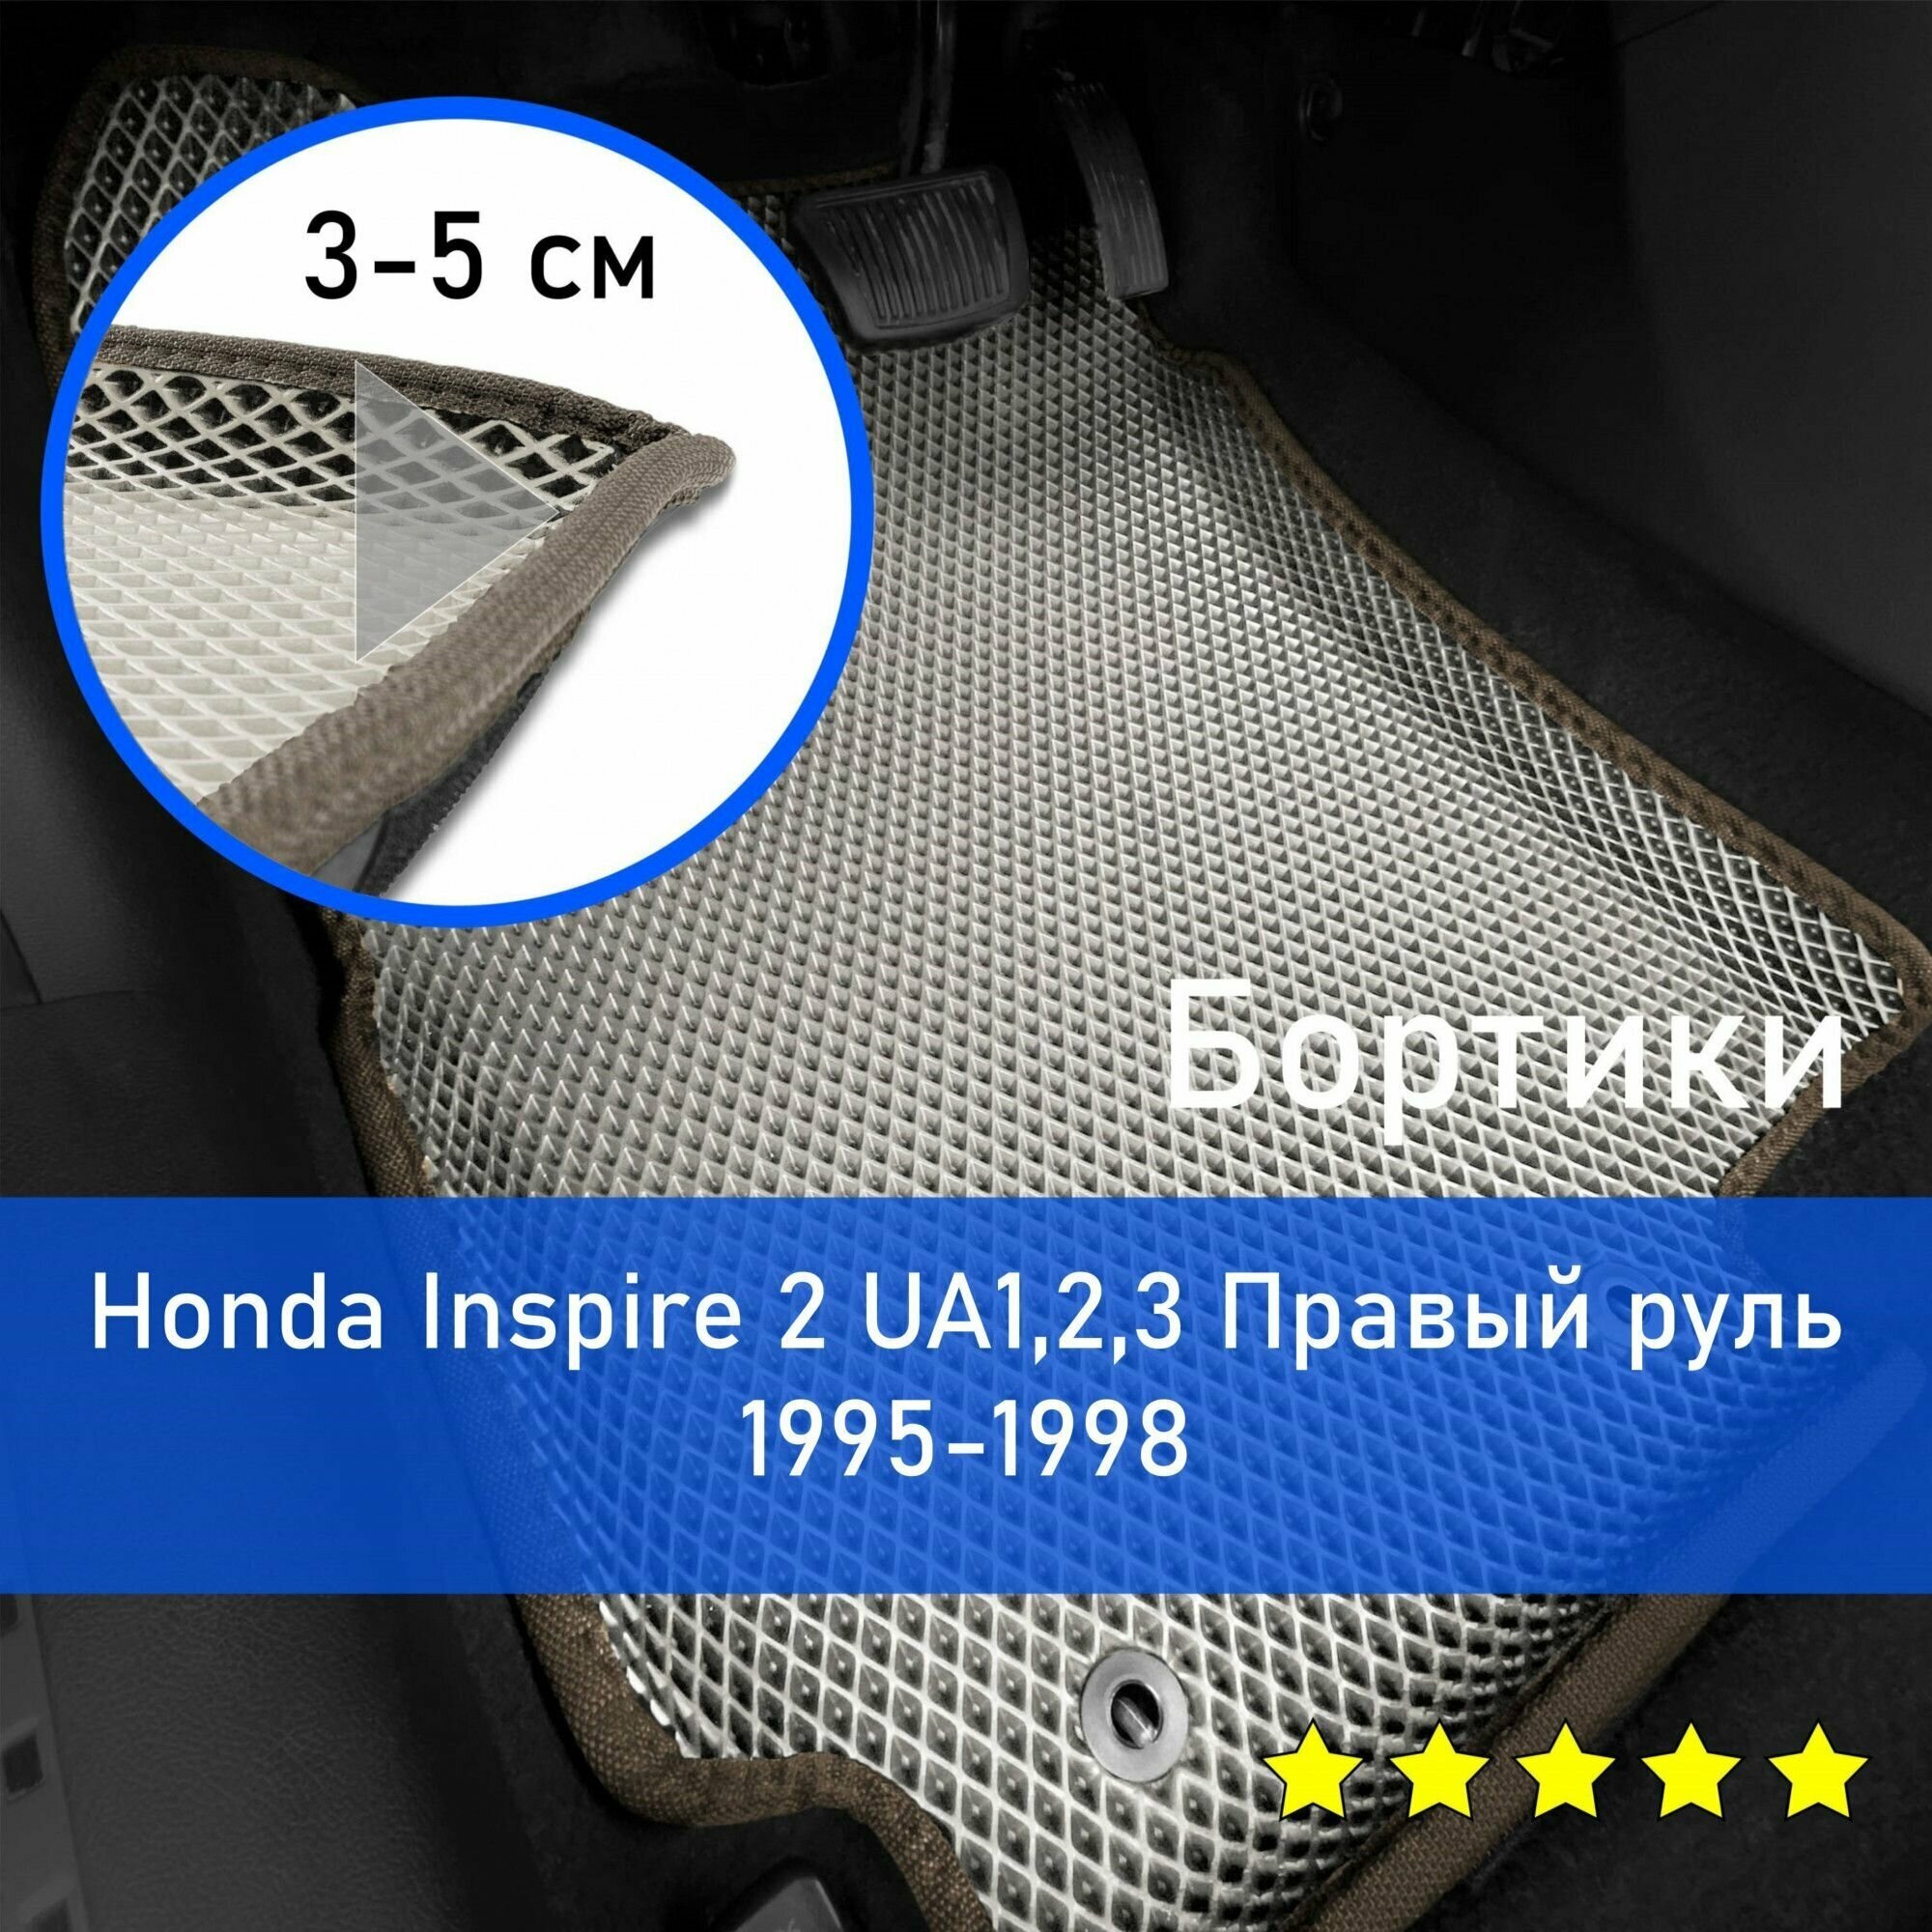 3Д коврики ЕВА (EVA, ЭВА) с бортиками на Honda Inspire 2 1995-1998 UA1,2,3 Хонда Инспаер Правый руль Ромб Бежевый с коричневой окантовкой